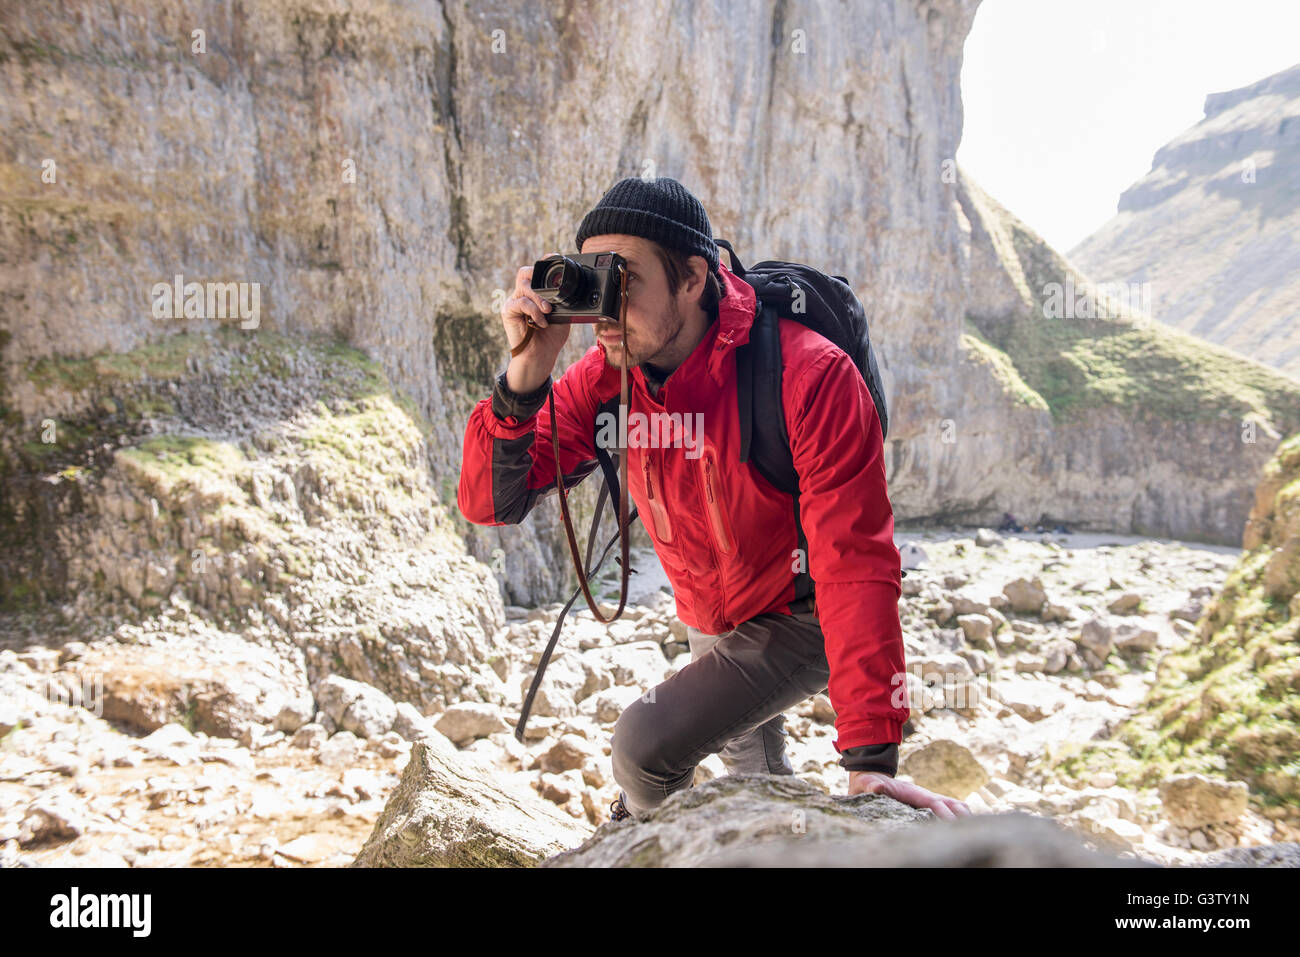 Ein Bergsteiger klettern über die Felsen im unwegsamen Gelände zu fotografieren. Stockfoto